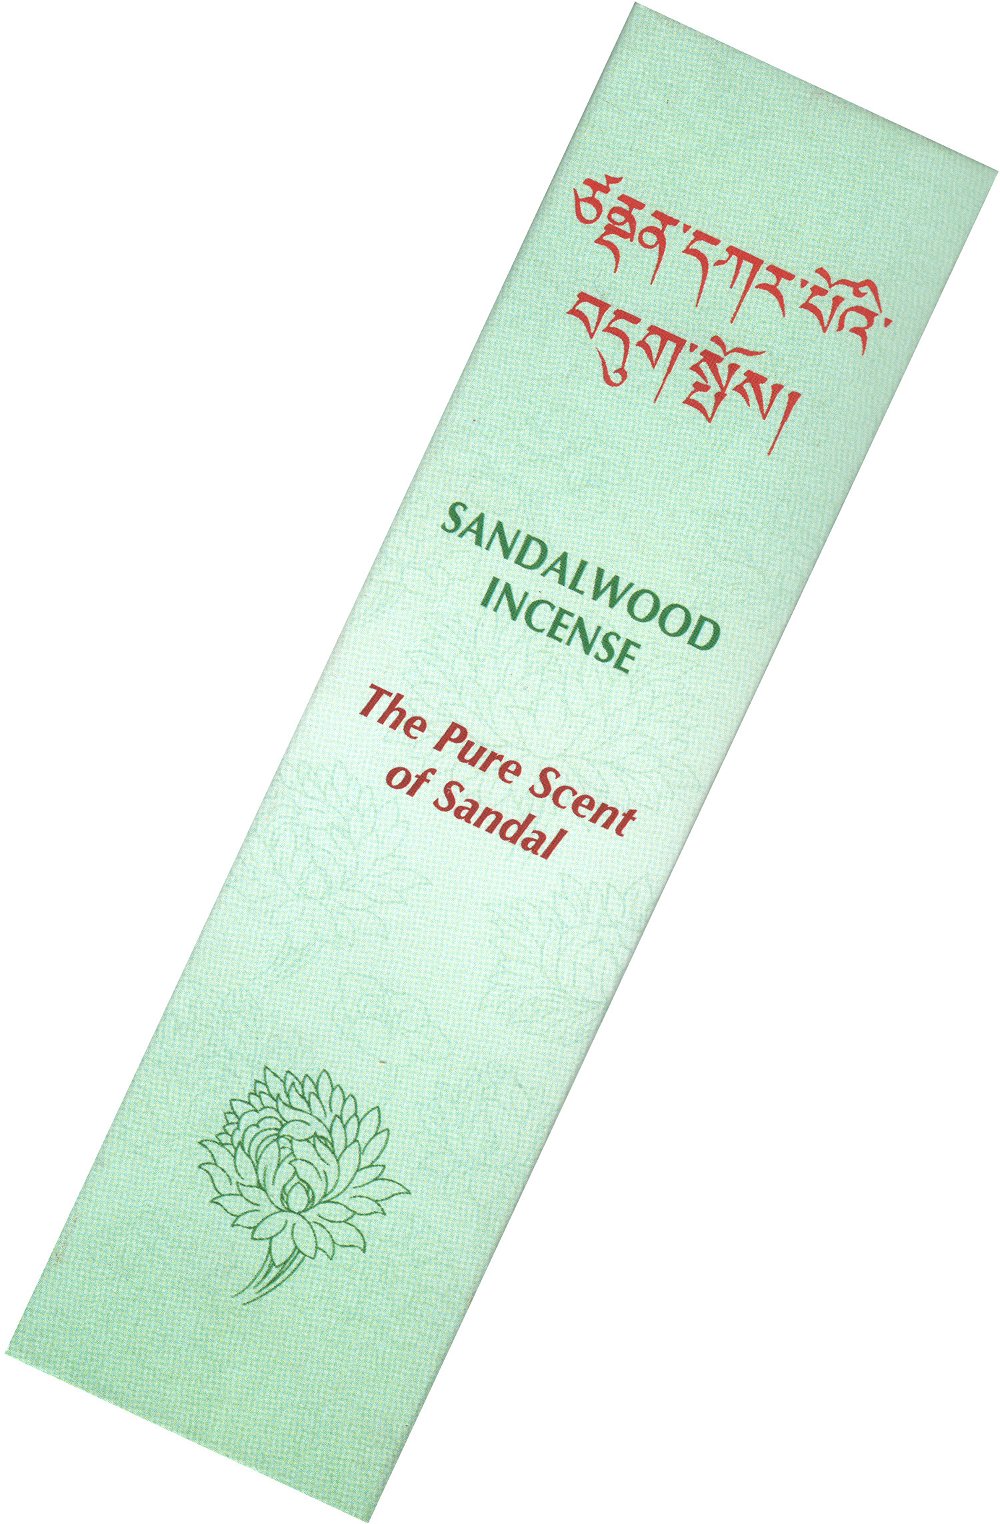 Благовоние Sandalwood Incense (Сандаловое дерево), 20 палочек по 14 см, 20, Сандаловое дерево